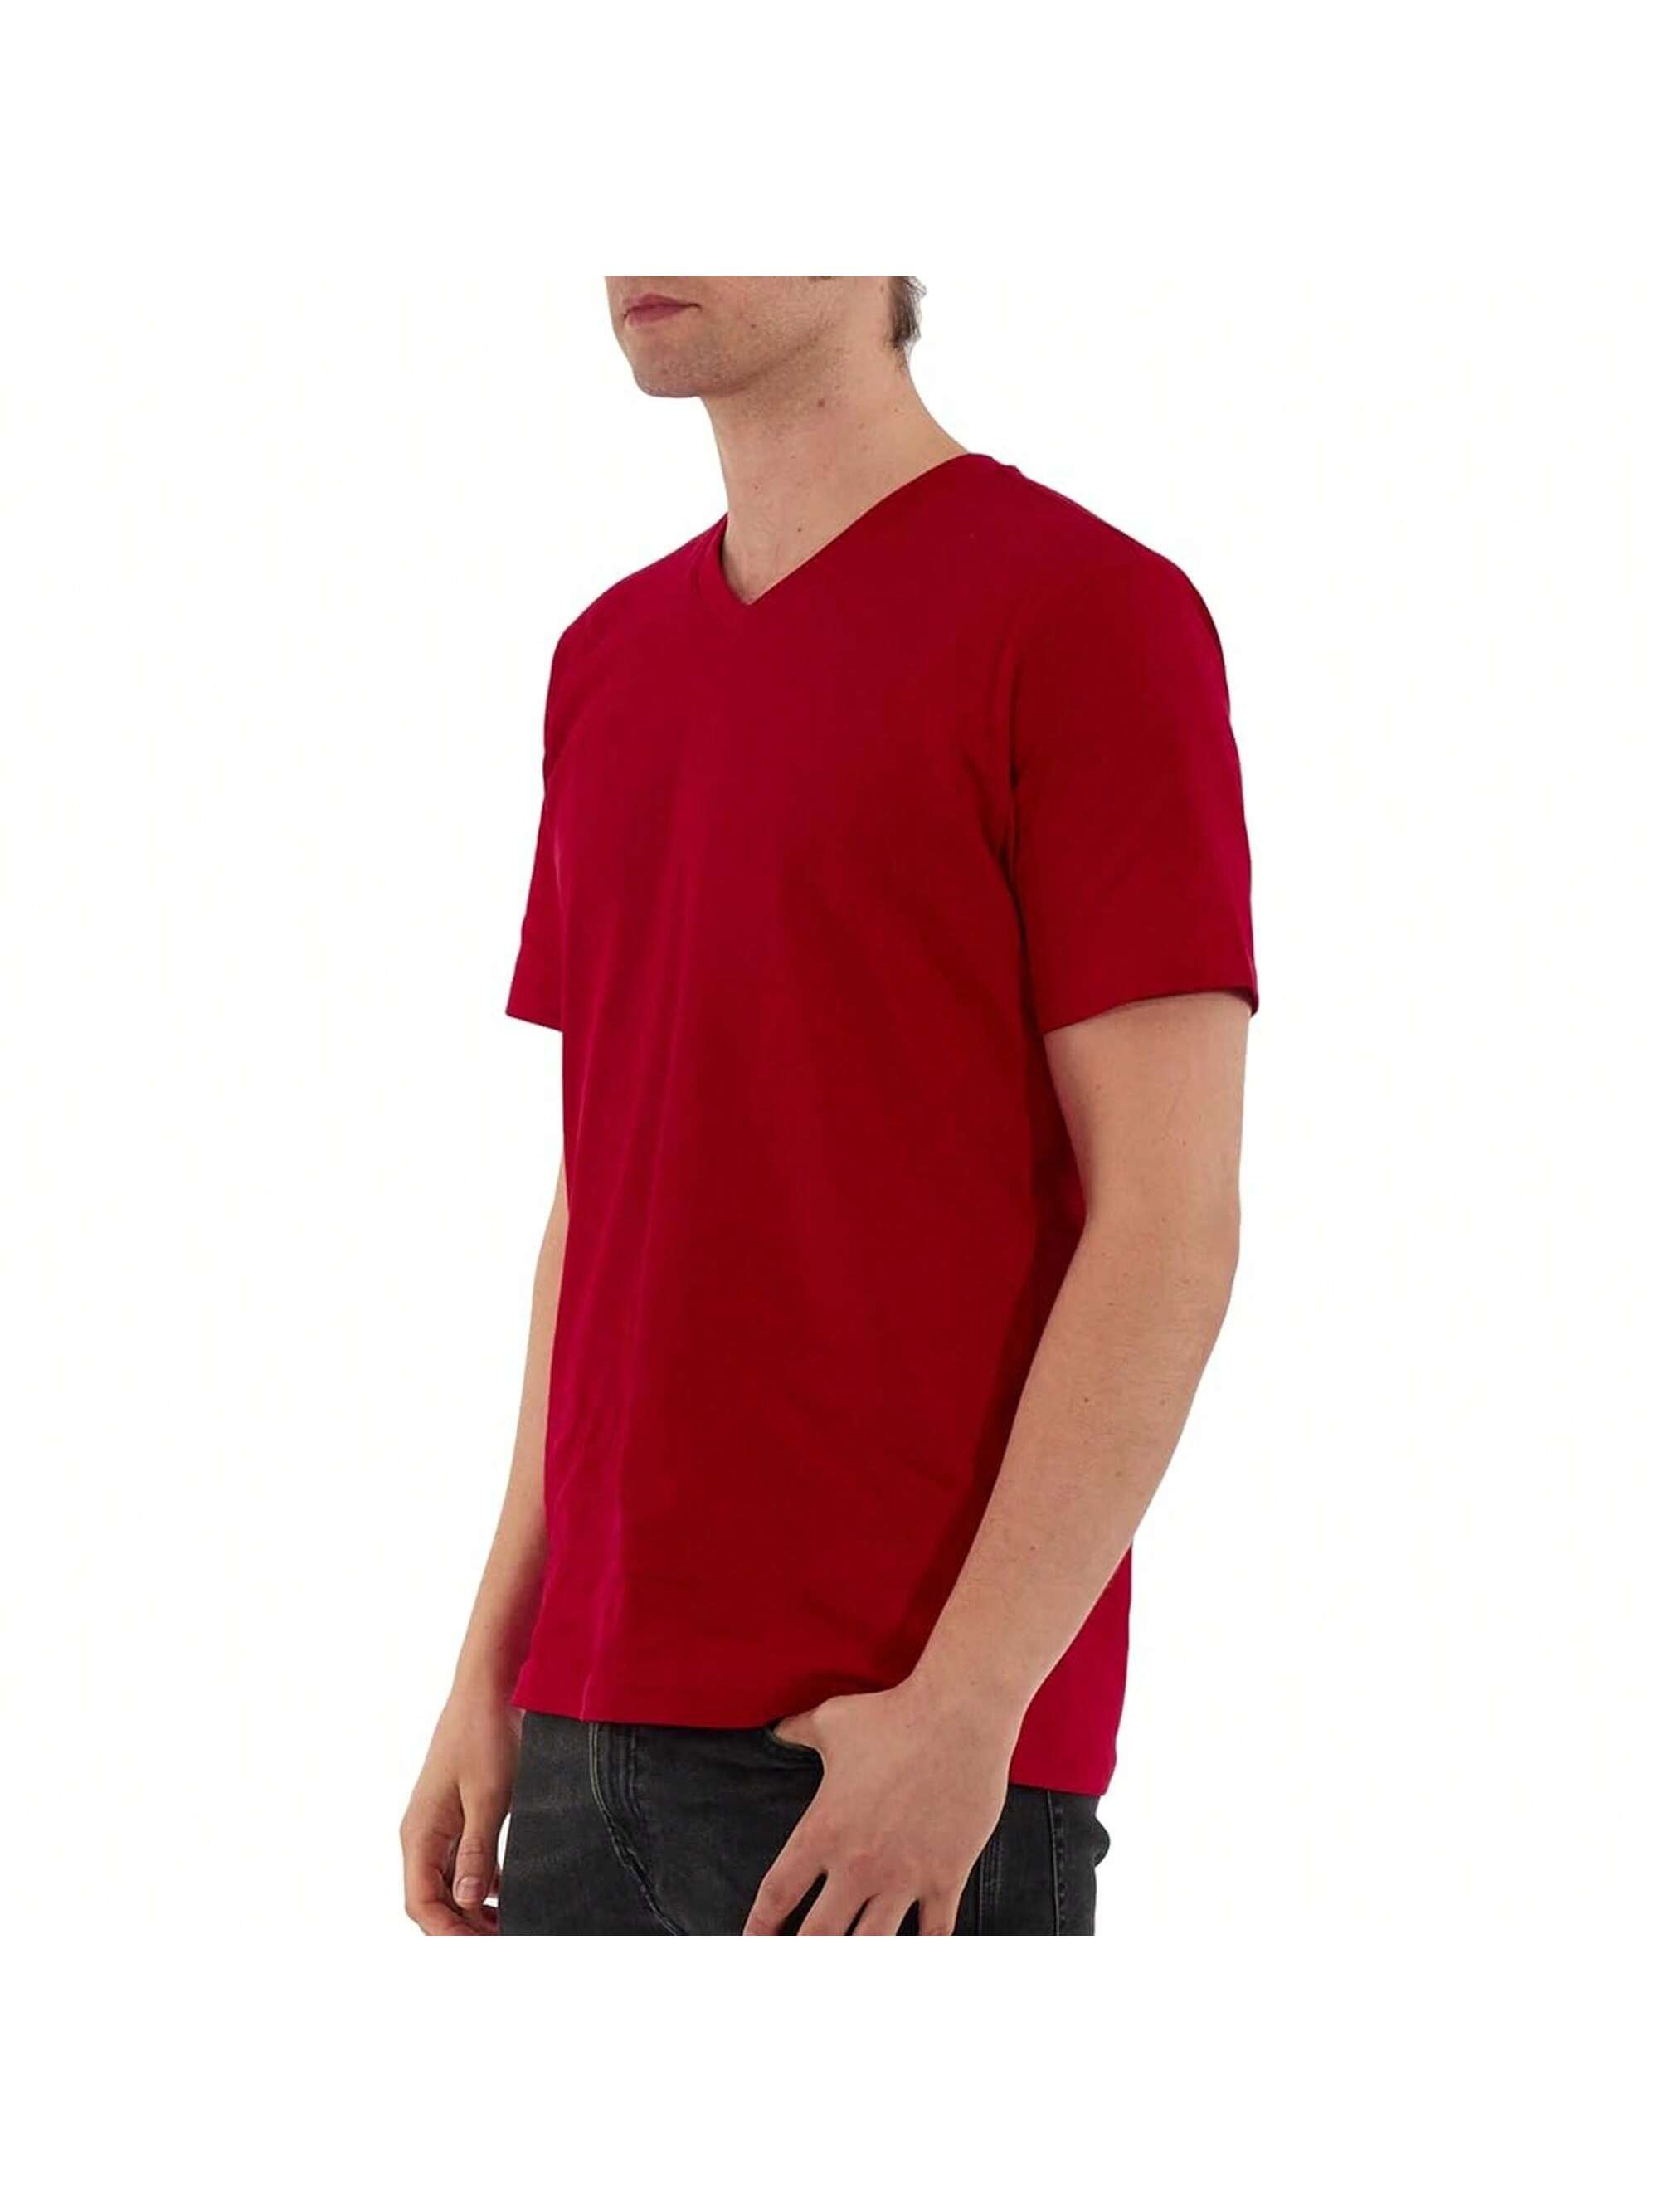 Мужская хлопковая футболка премиум-класса с v-образным вырезом Rich Cotton BLK-M, красный перчатки sherwood code v sr blk red 13